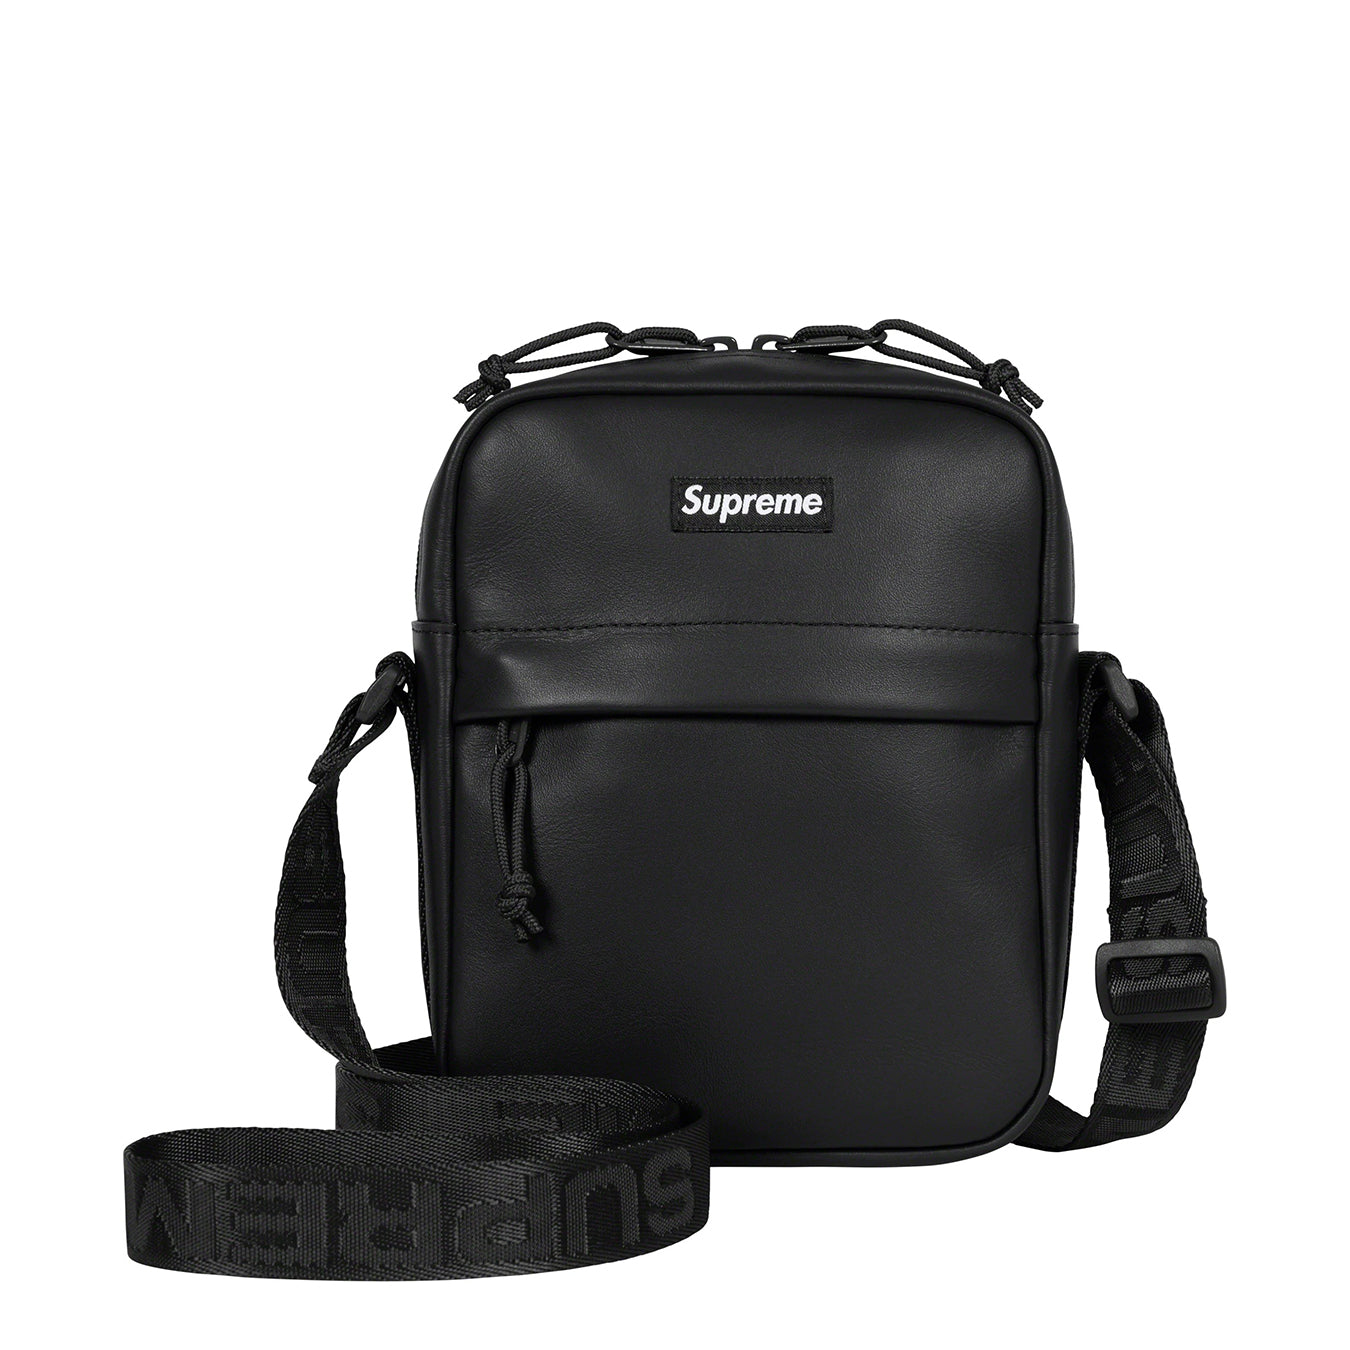 Supreme Leather Shoulder Bag "Black"